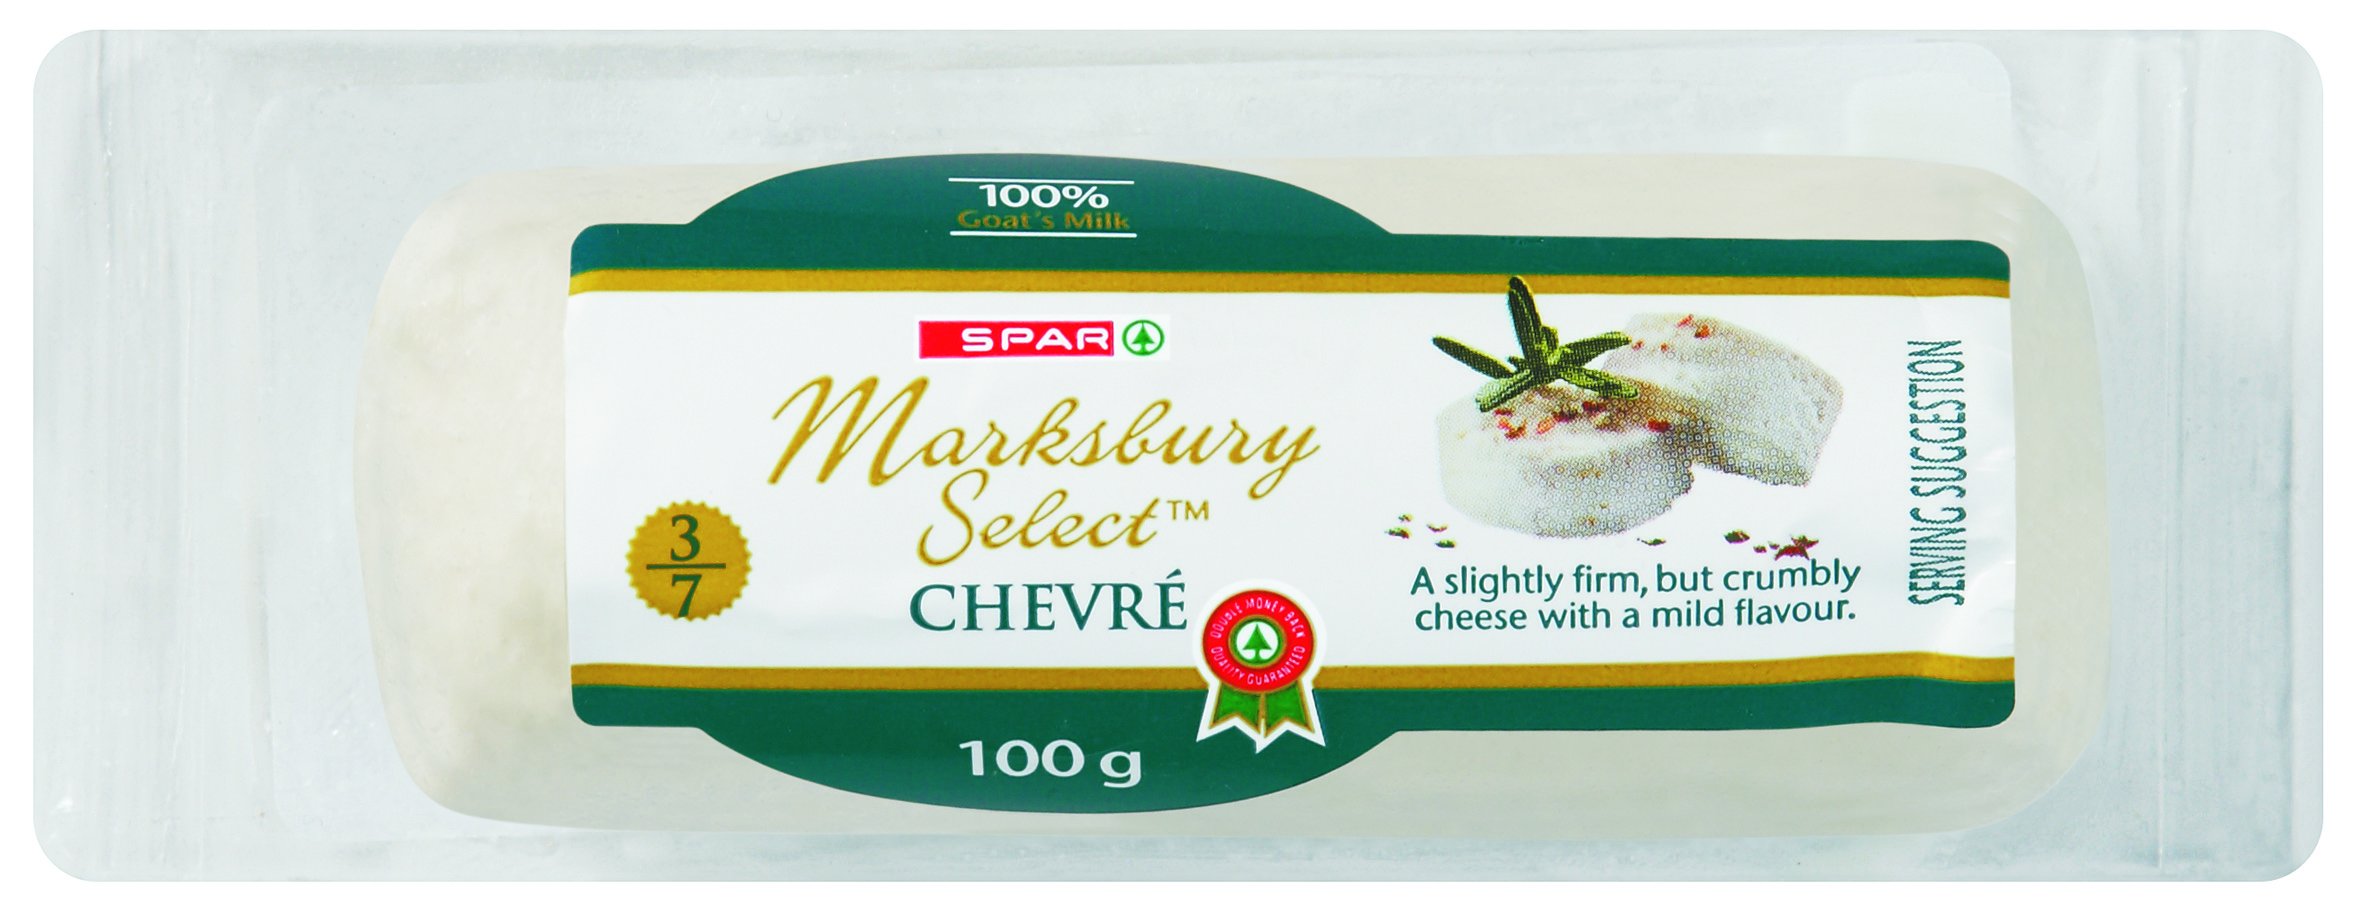 marksbury select cheese chevre 